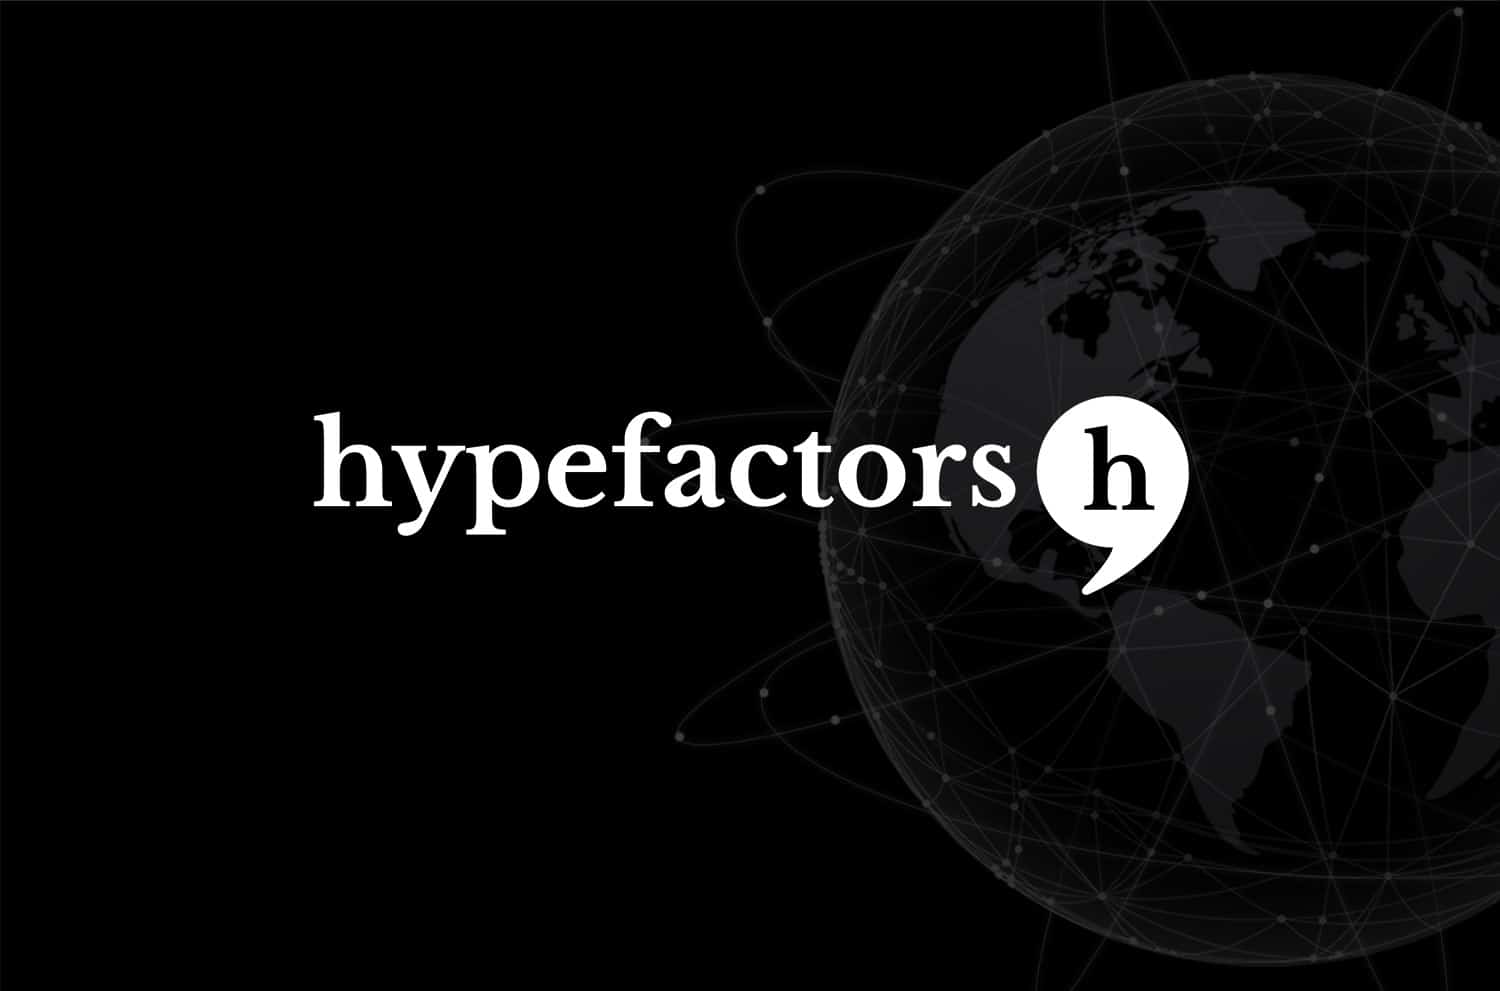 Hypefactors: Ledelsen investerer igen